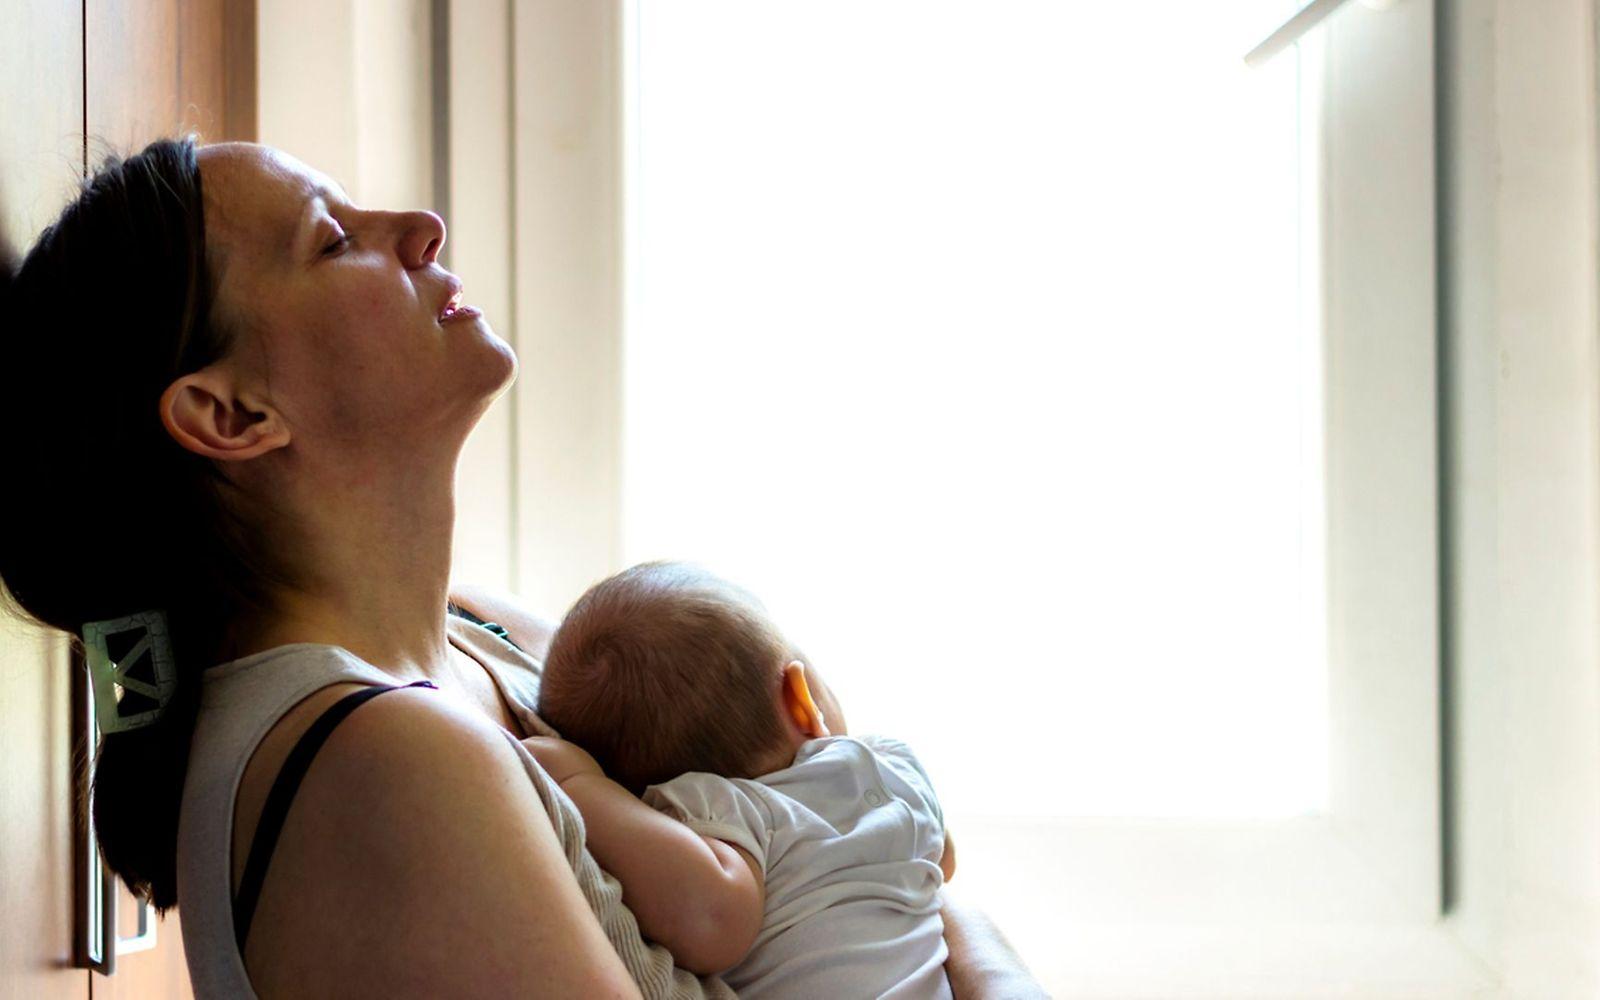 Geburtstrauma: Eine Mutter lehnt erschöpft an der Wand und hält ihr Neugeborenes